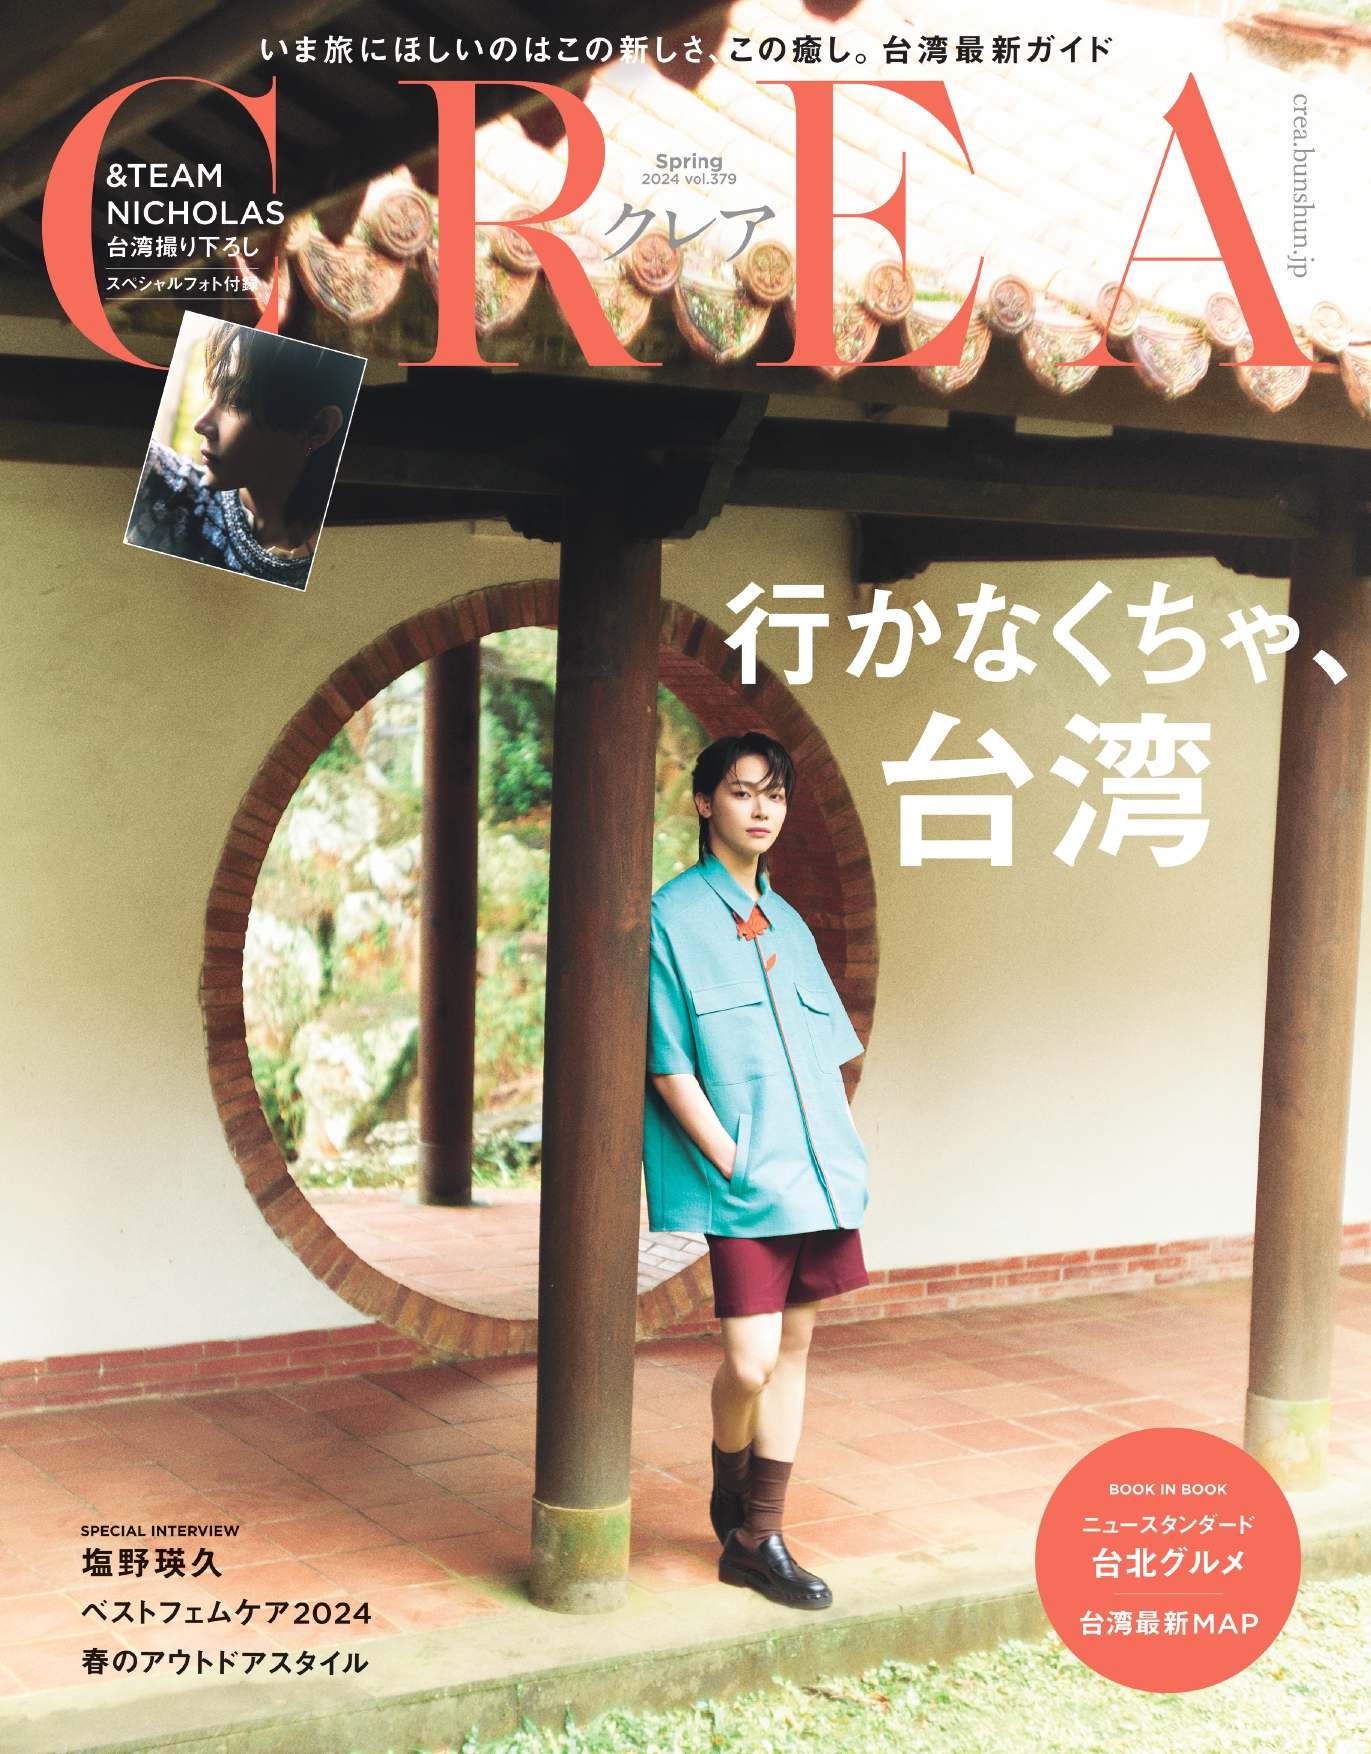 「&TEAM」NICHOLASが表紙『CREA』台湾特集号が完売の画像